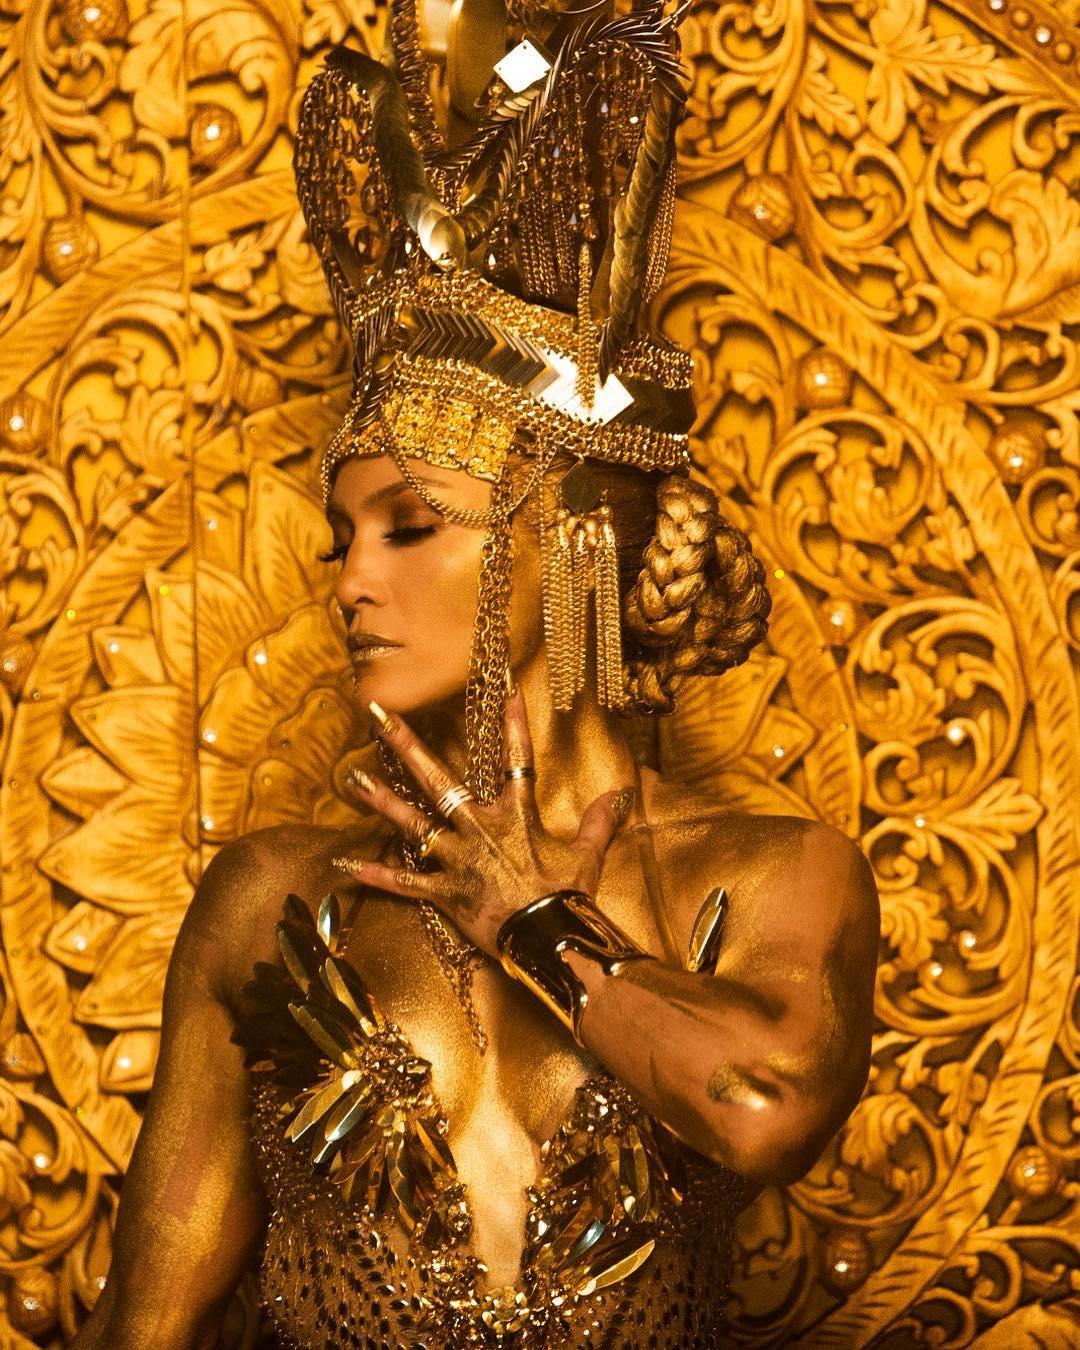 J-Lo в едва заметном костюме в стиле Клеопатры, который она надевала в музыкальном видео для своей новой песни El Anillo